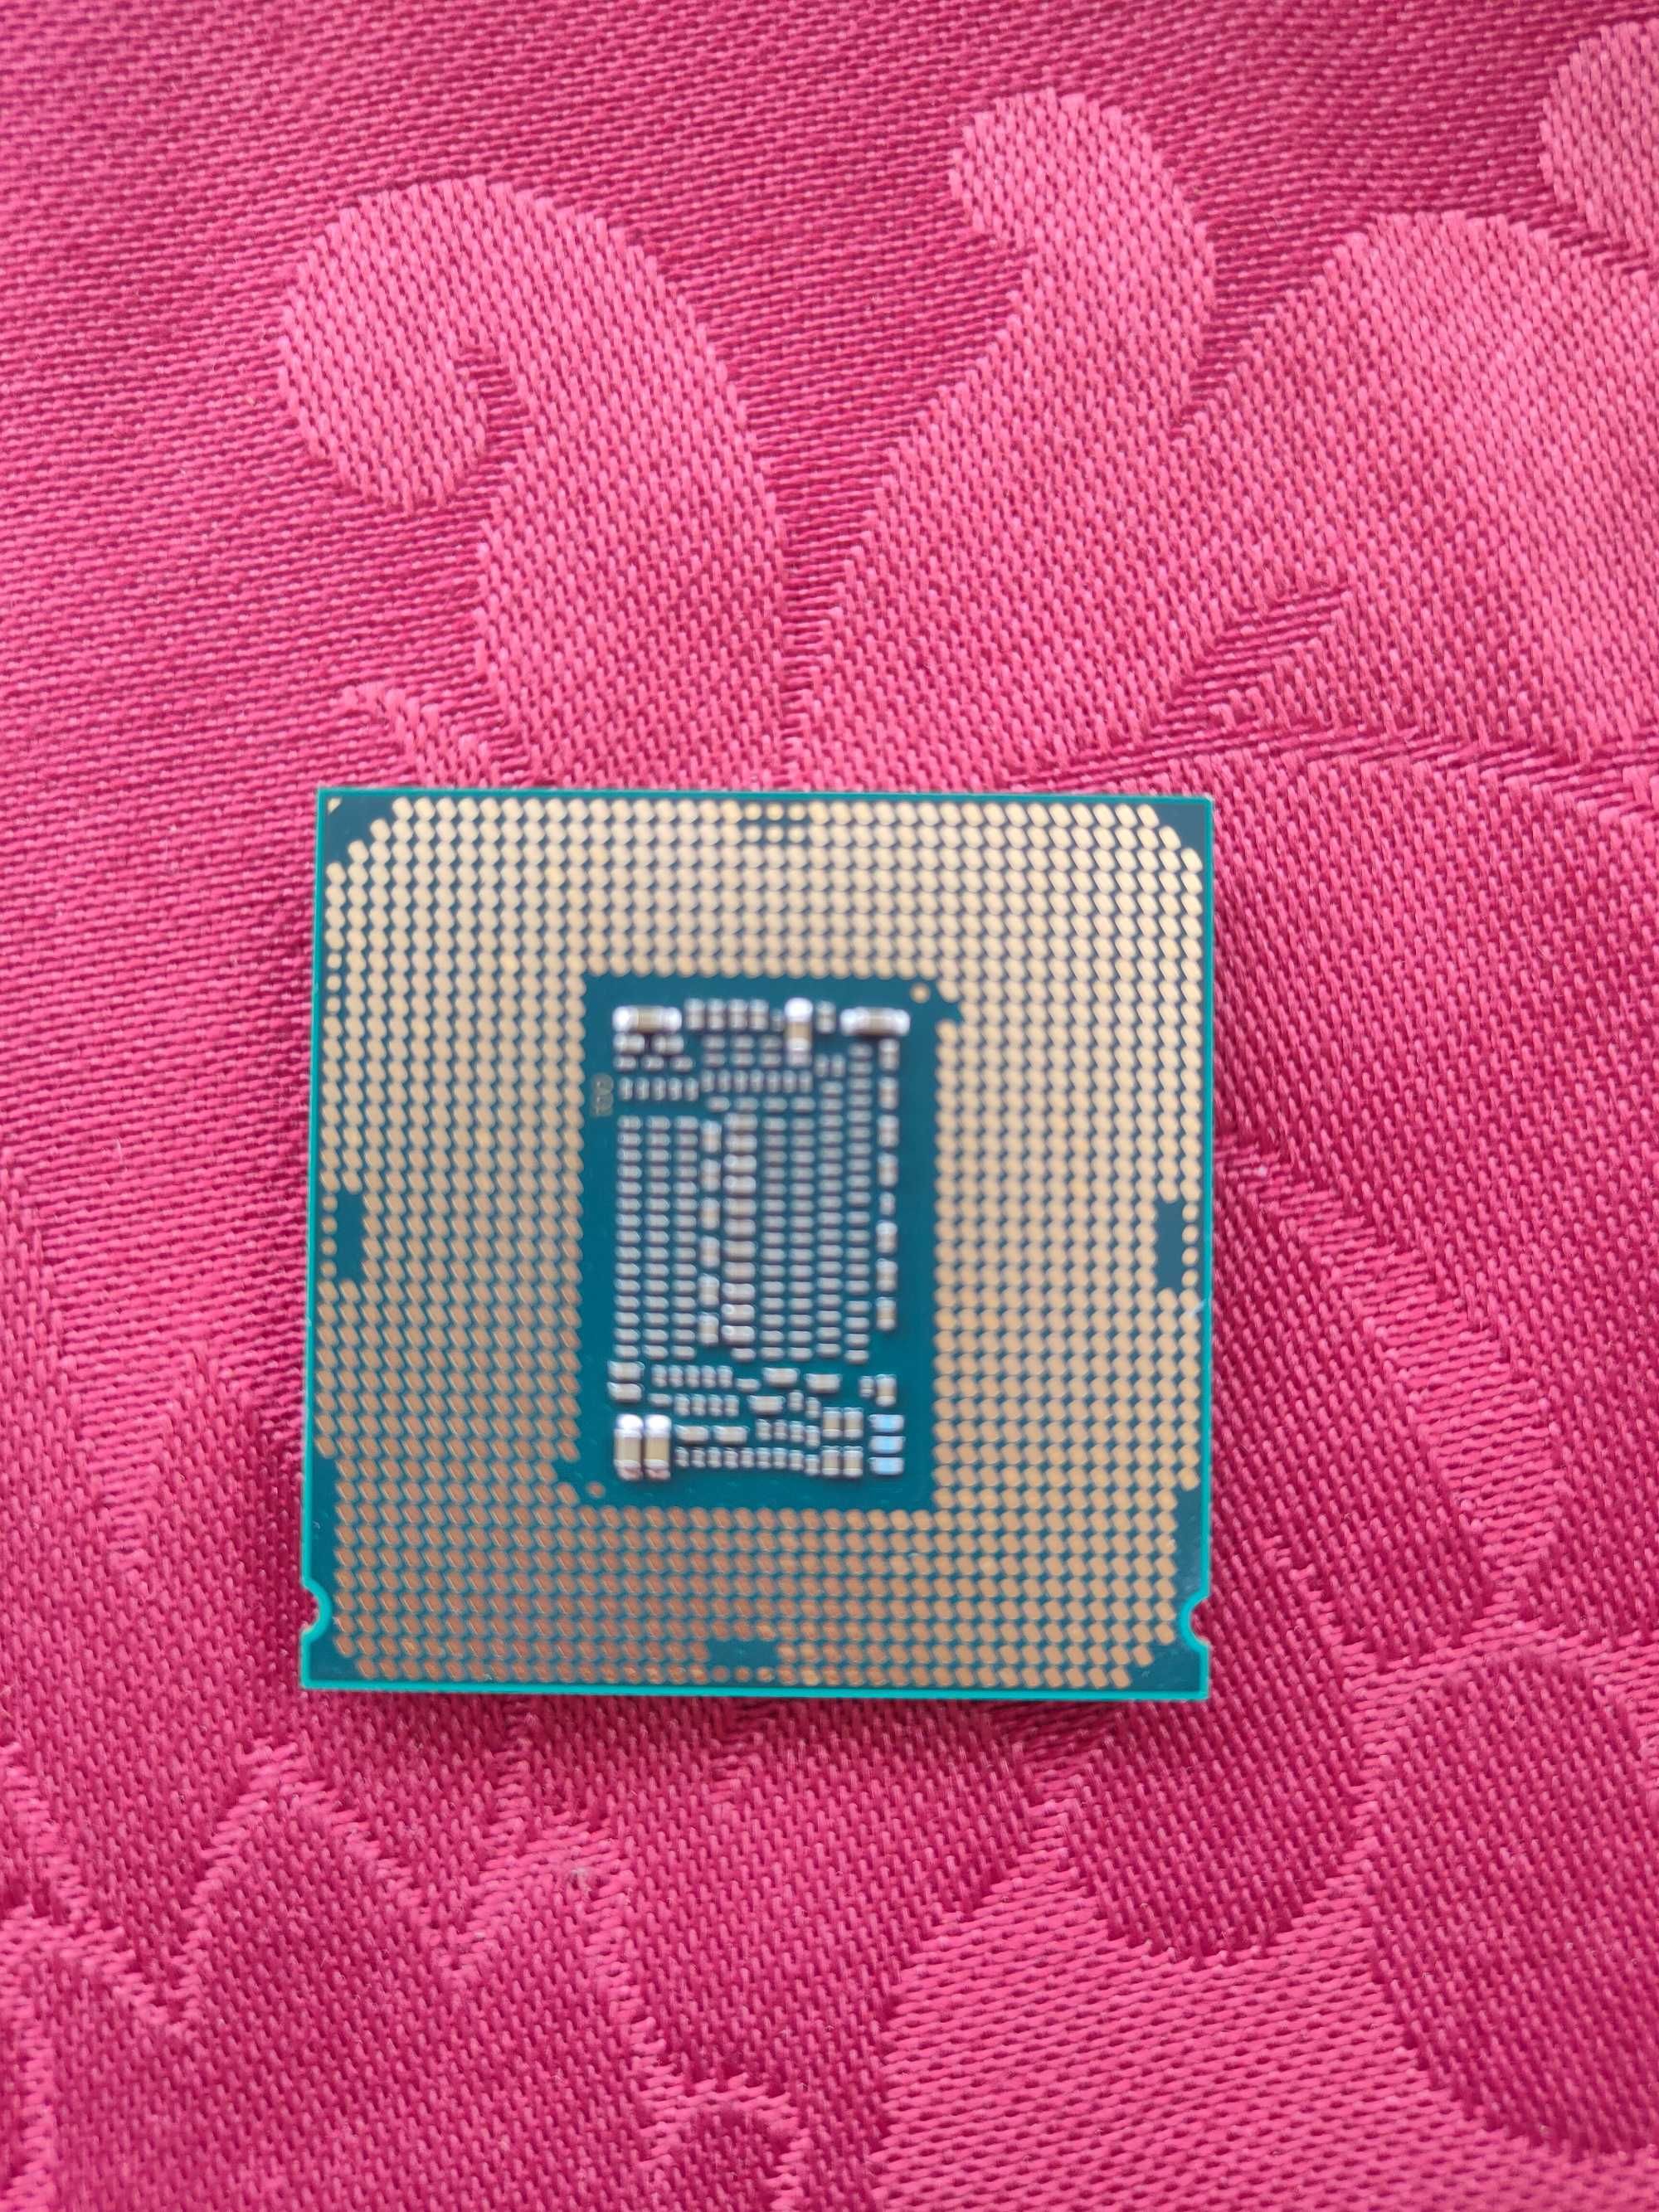 Processador Intel Core i5-8600 Hexa-Core 3.1GHz Turbo 4.3GHz 9MB